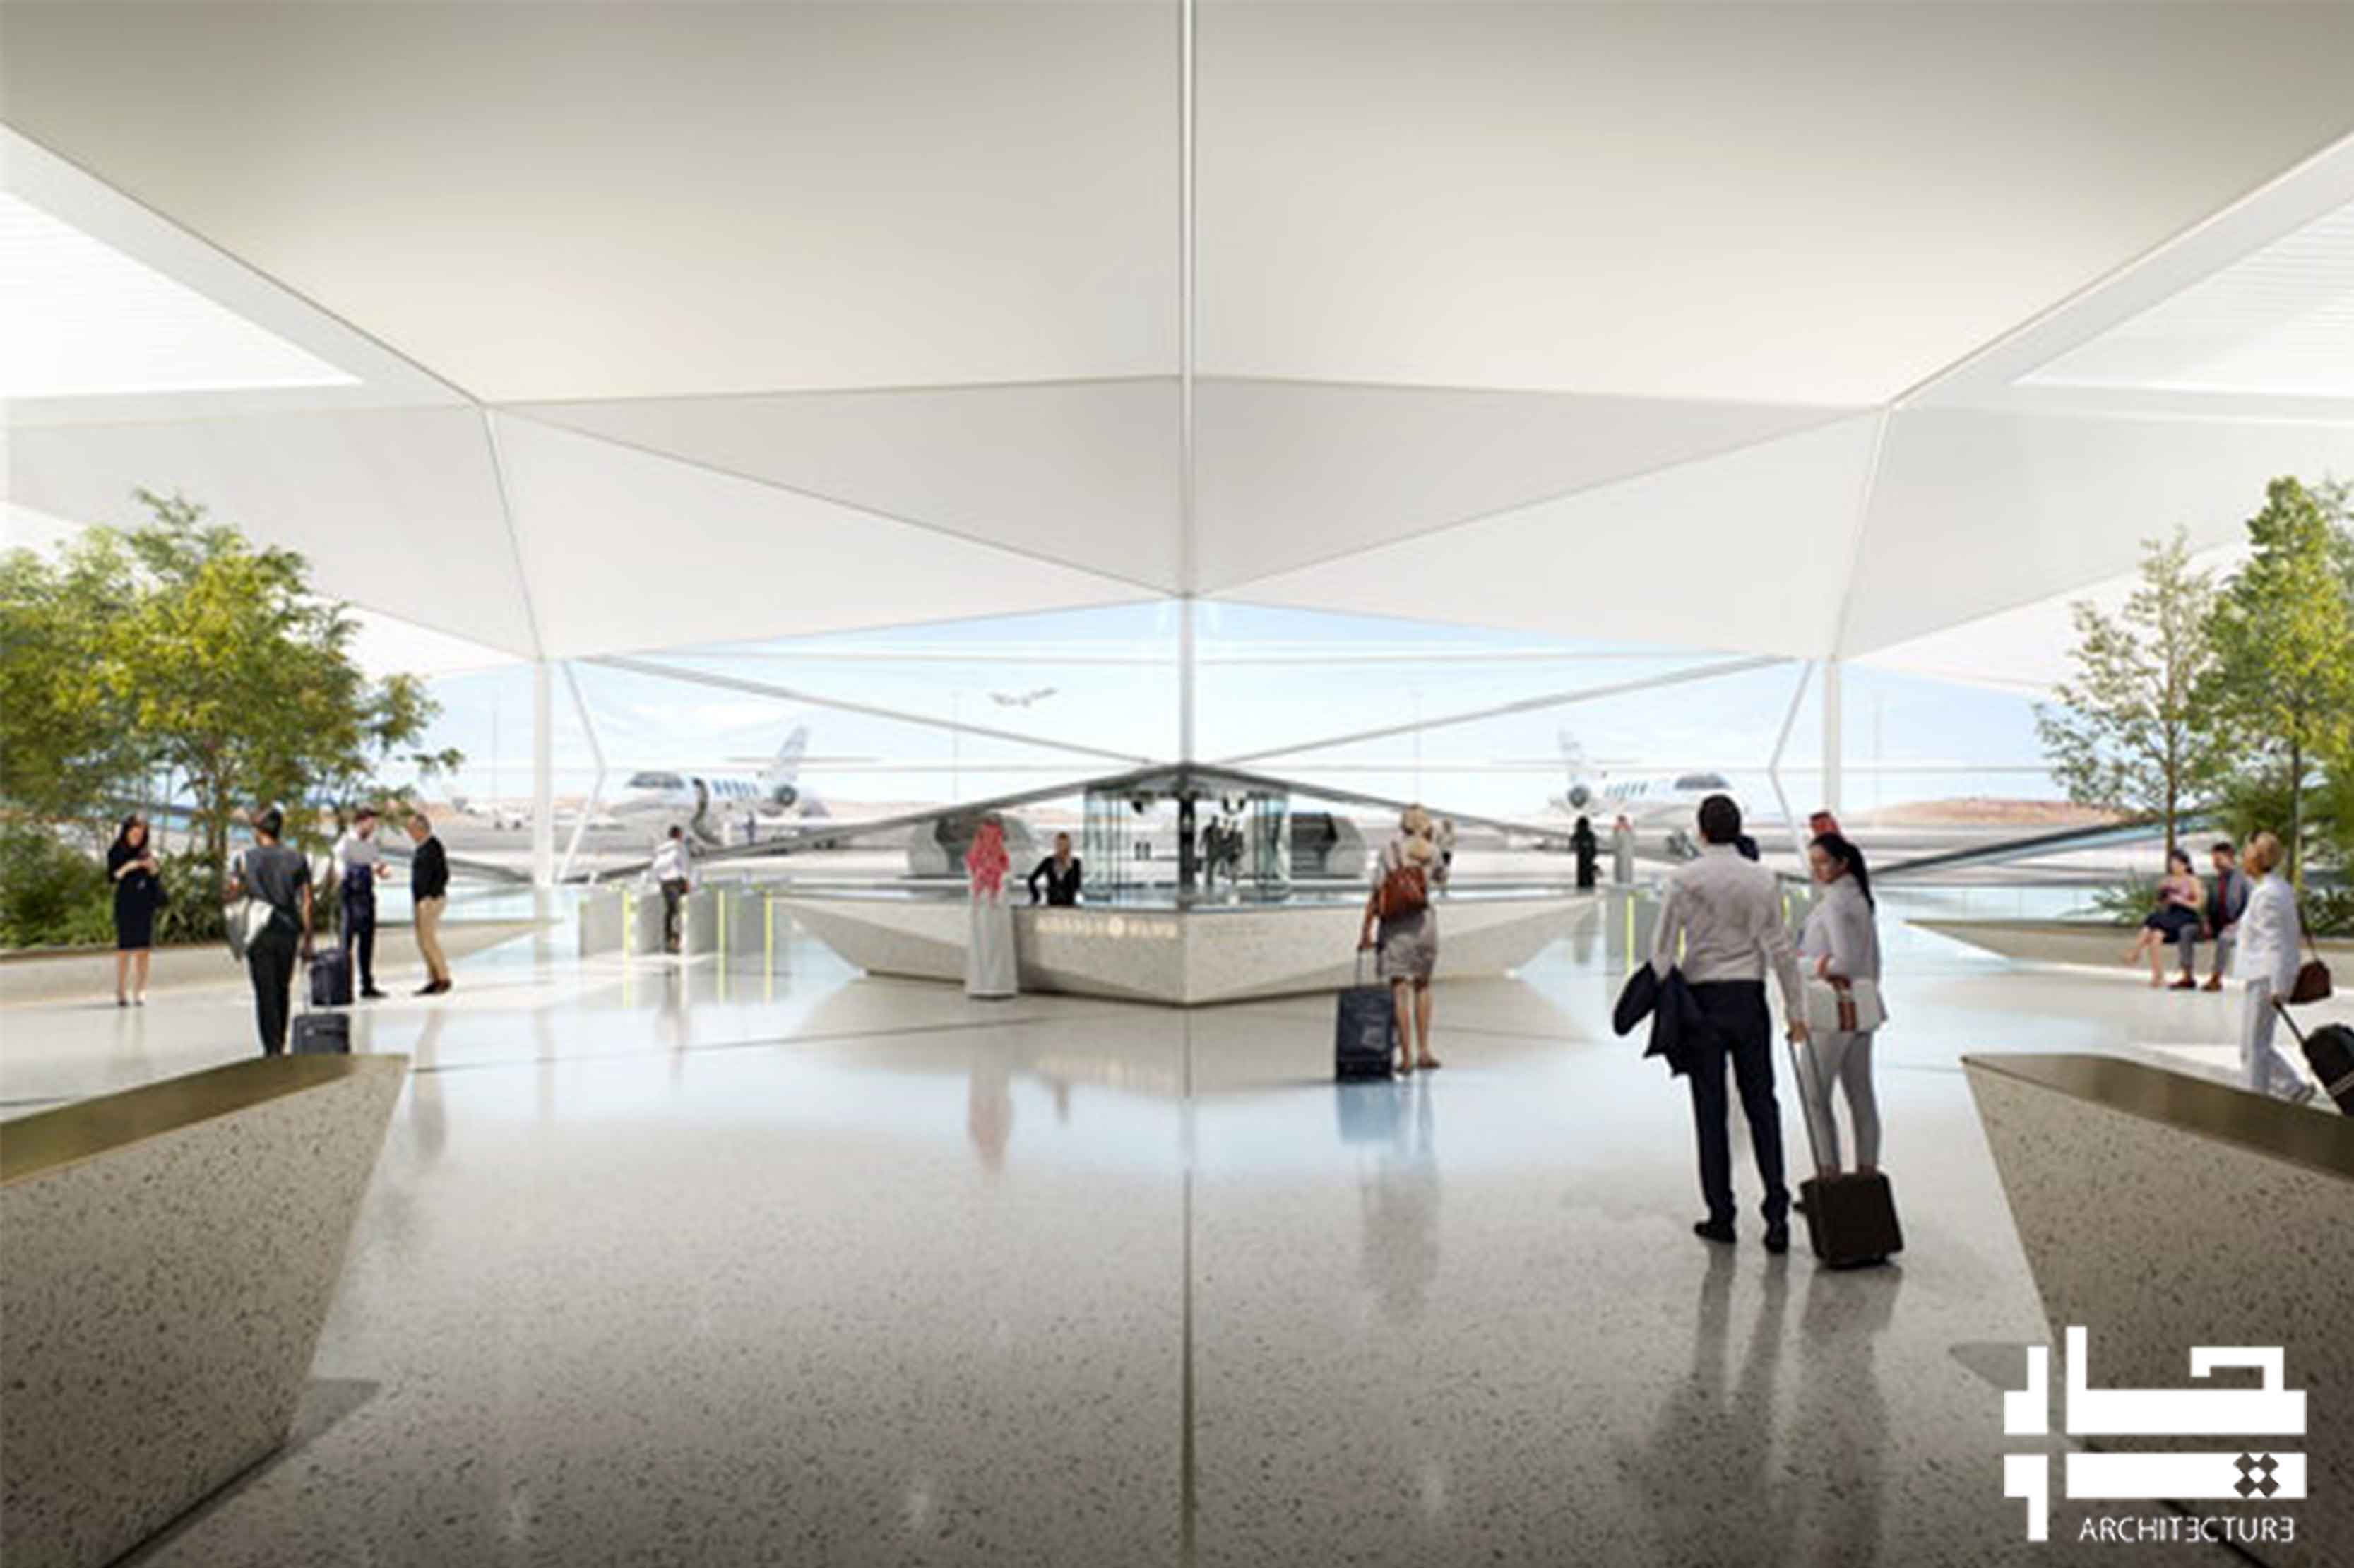 فرودگاه با طرح هندسی مواج و آینه